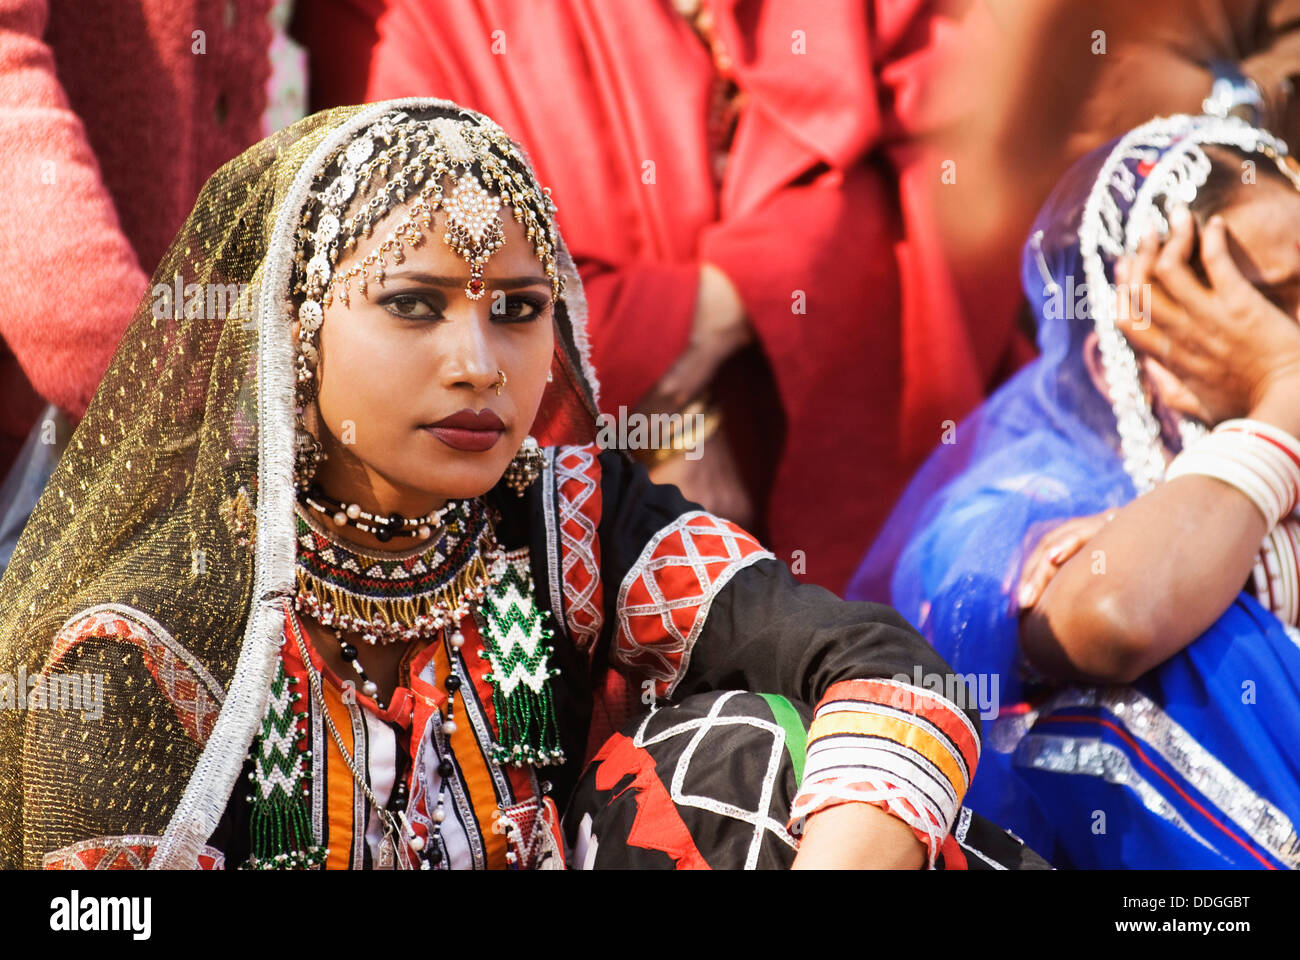 Woman in traditional Rajasthani dress at Surajkund Mela, Faridabad, Haryana, India Stock Photo